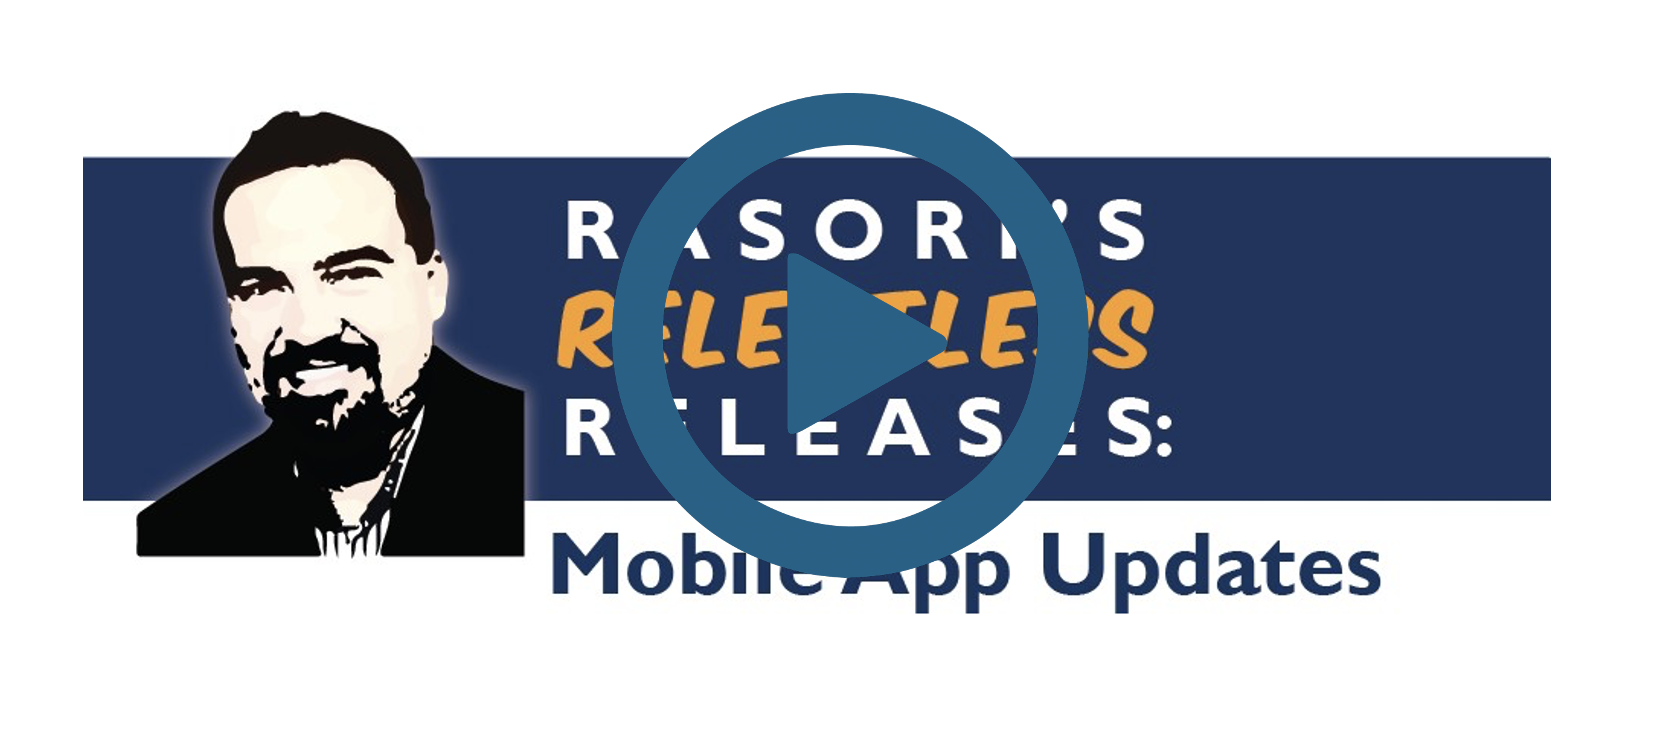 MCTlive! Mobile App Updates – Rasori’s Relentless Releases